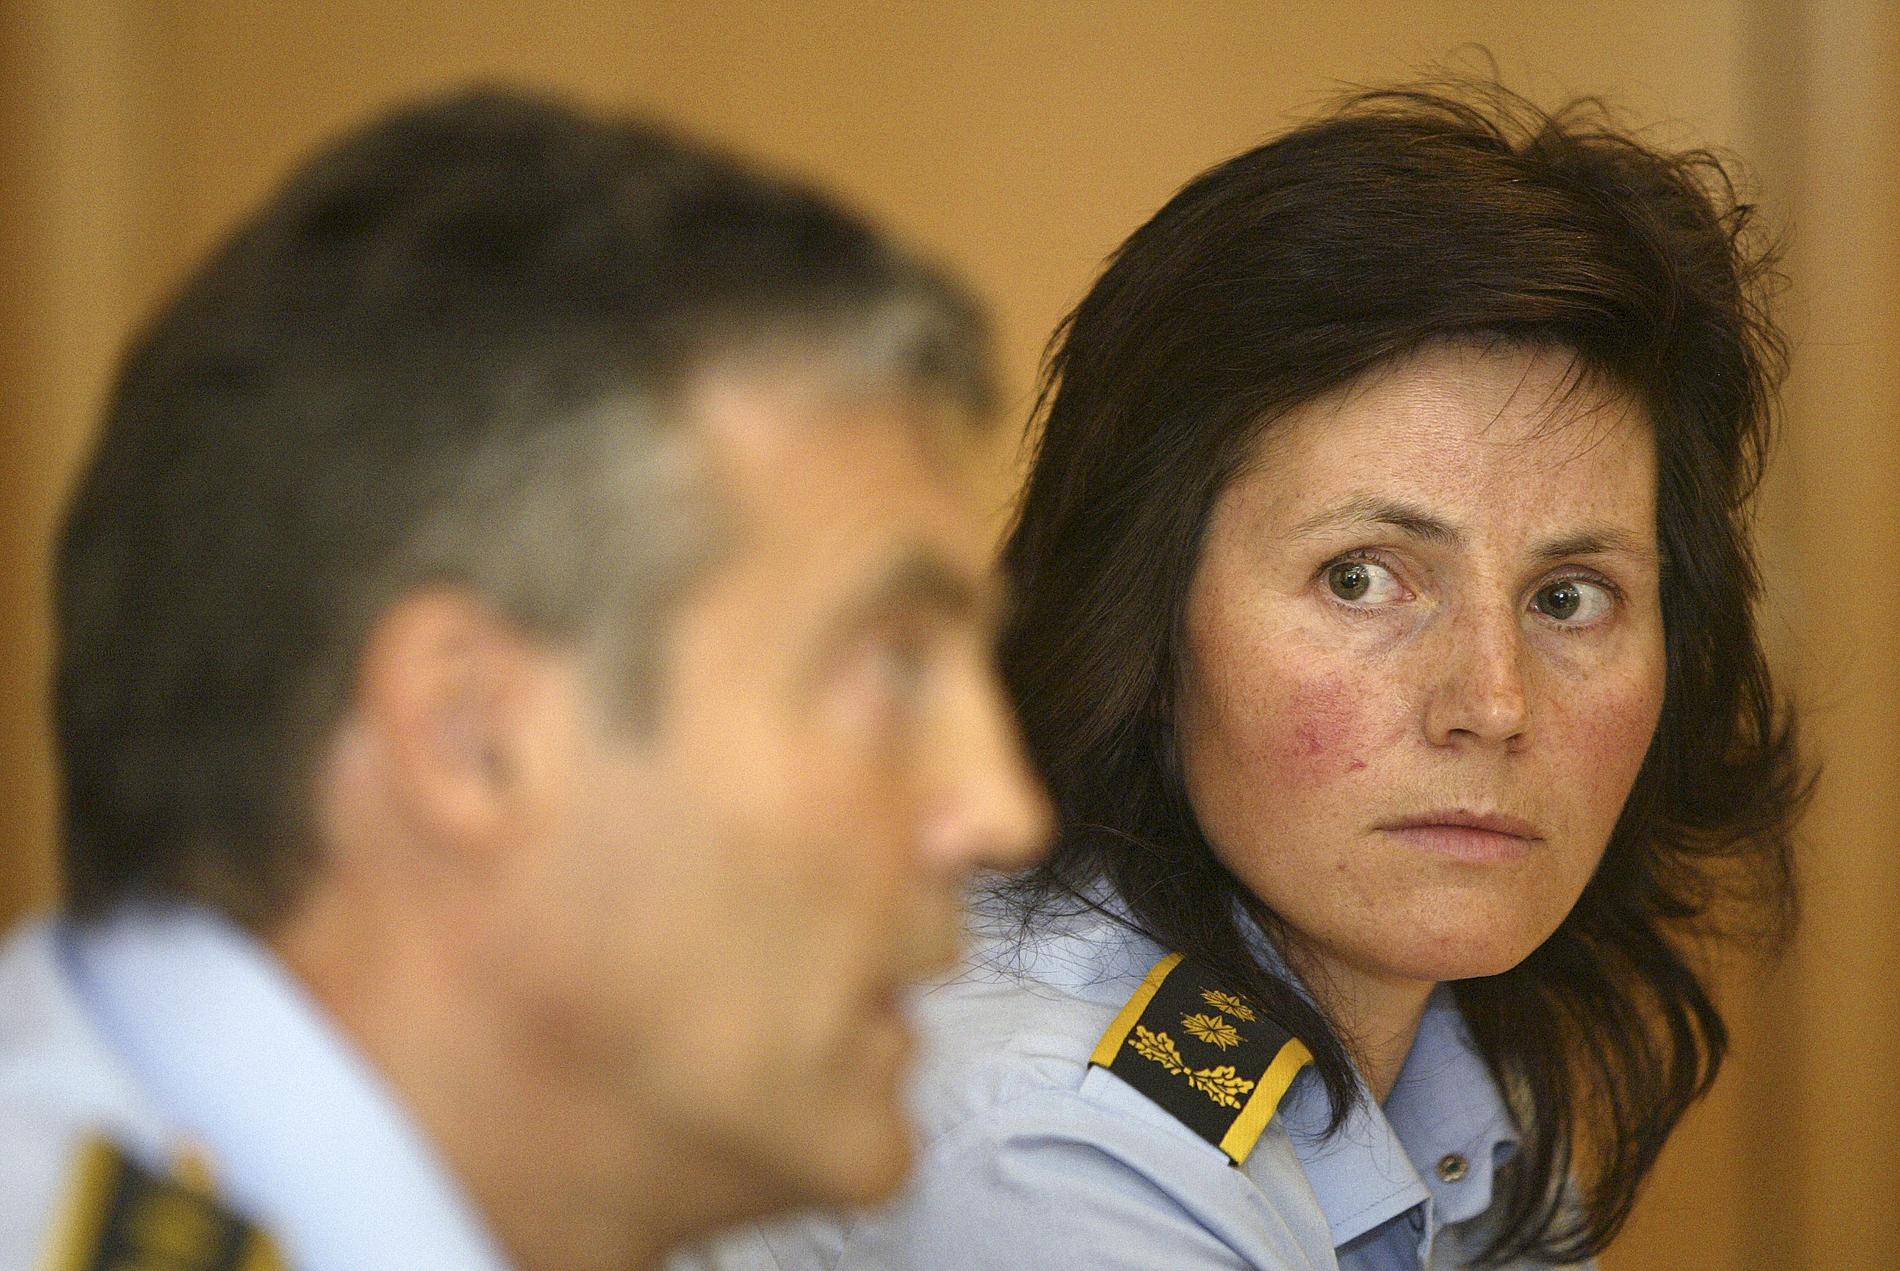 SAKEN: Politiadvokat Sissel Kleiven er ansvarlig jurist for overgrepssaken i Sogn.